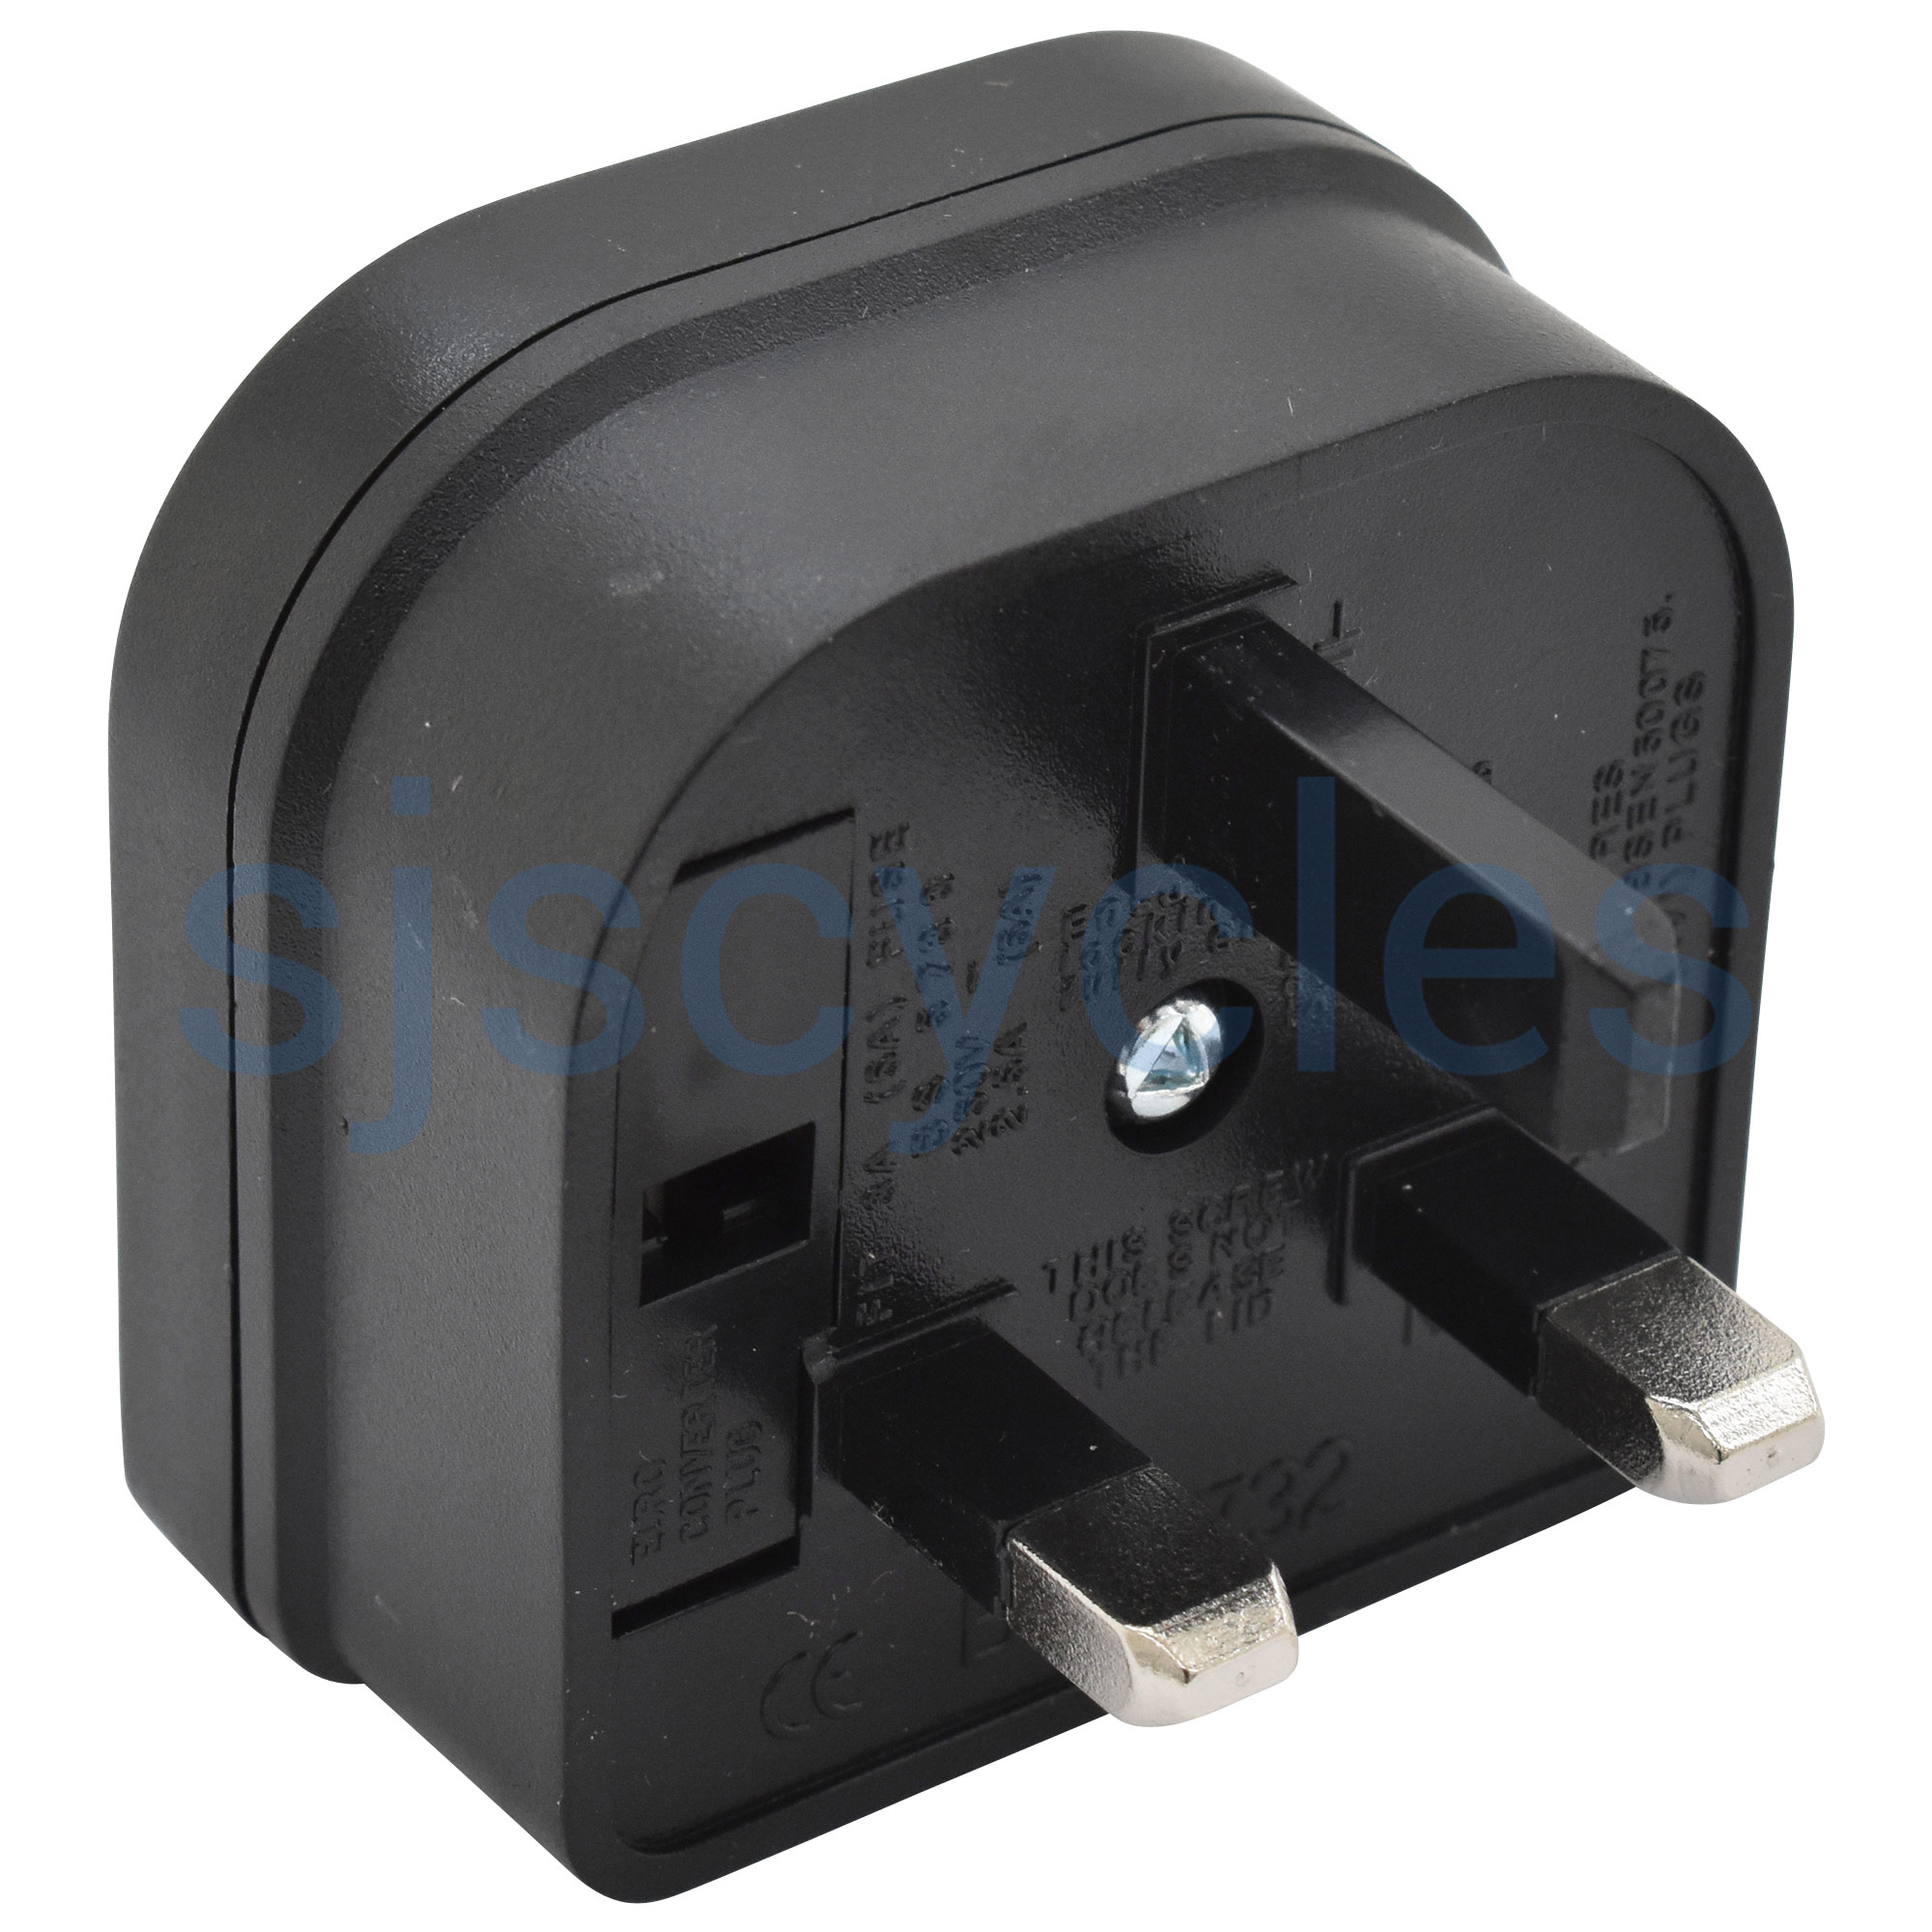 UK Travel Converter Adaptor Plug 2 Pin Euro to UK 3 Pin Plug Adaptor up to 5 Amp Black 